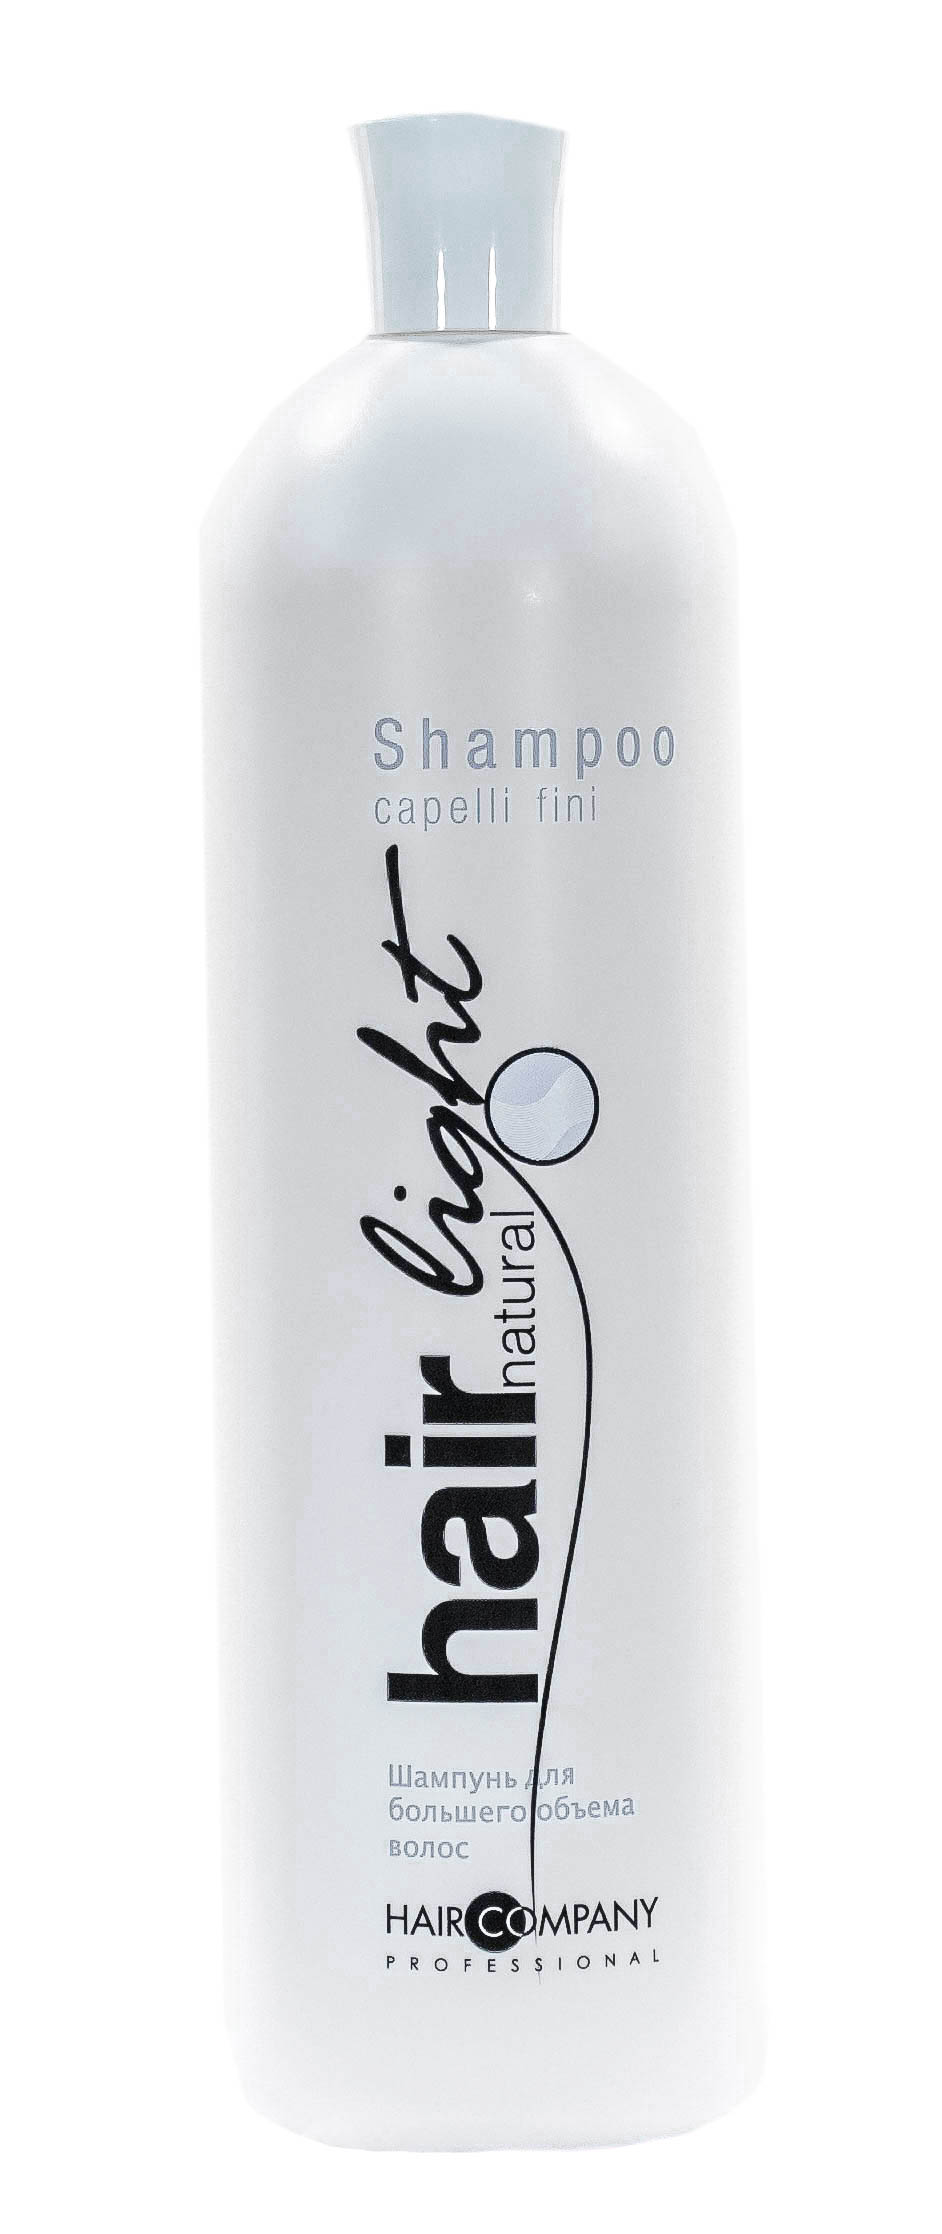 Hair Company Professional Шампунь для большего объема волос Capelli Fini, 1000 мл (Hair Company Professional, Hair Light)